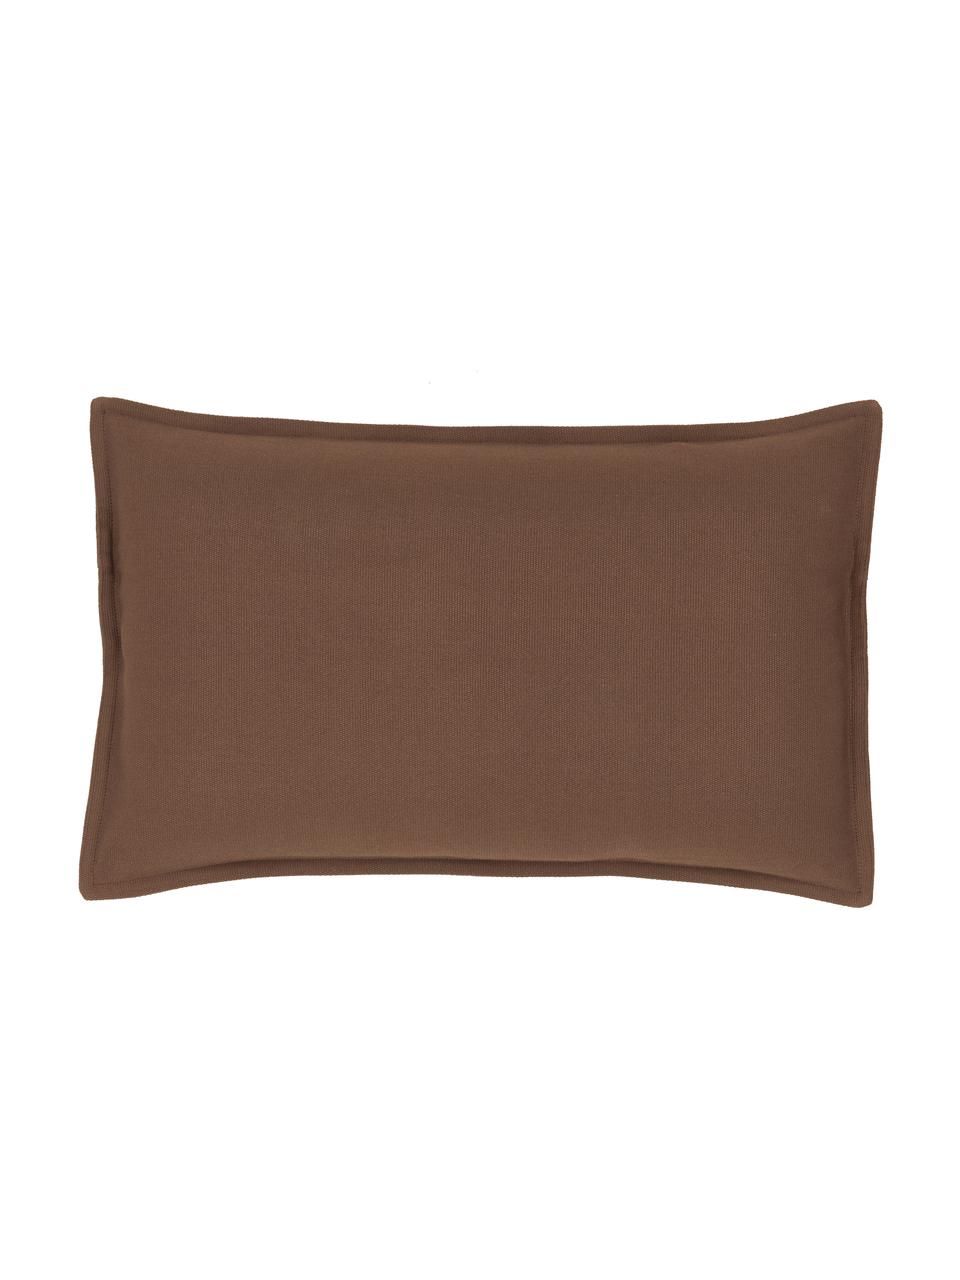 Poszewka na poduszkę z bawełny  Mads, 100% bawełna, Brązowy, S 30 x D 50 cm